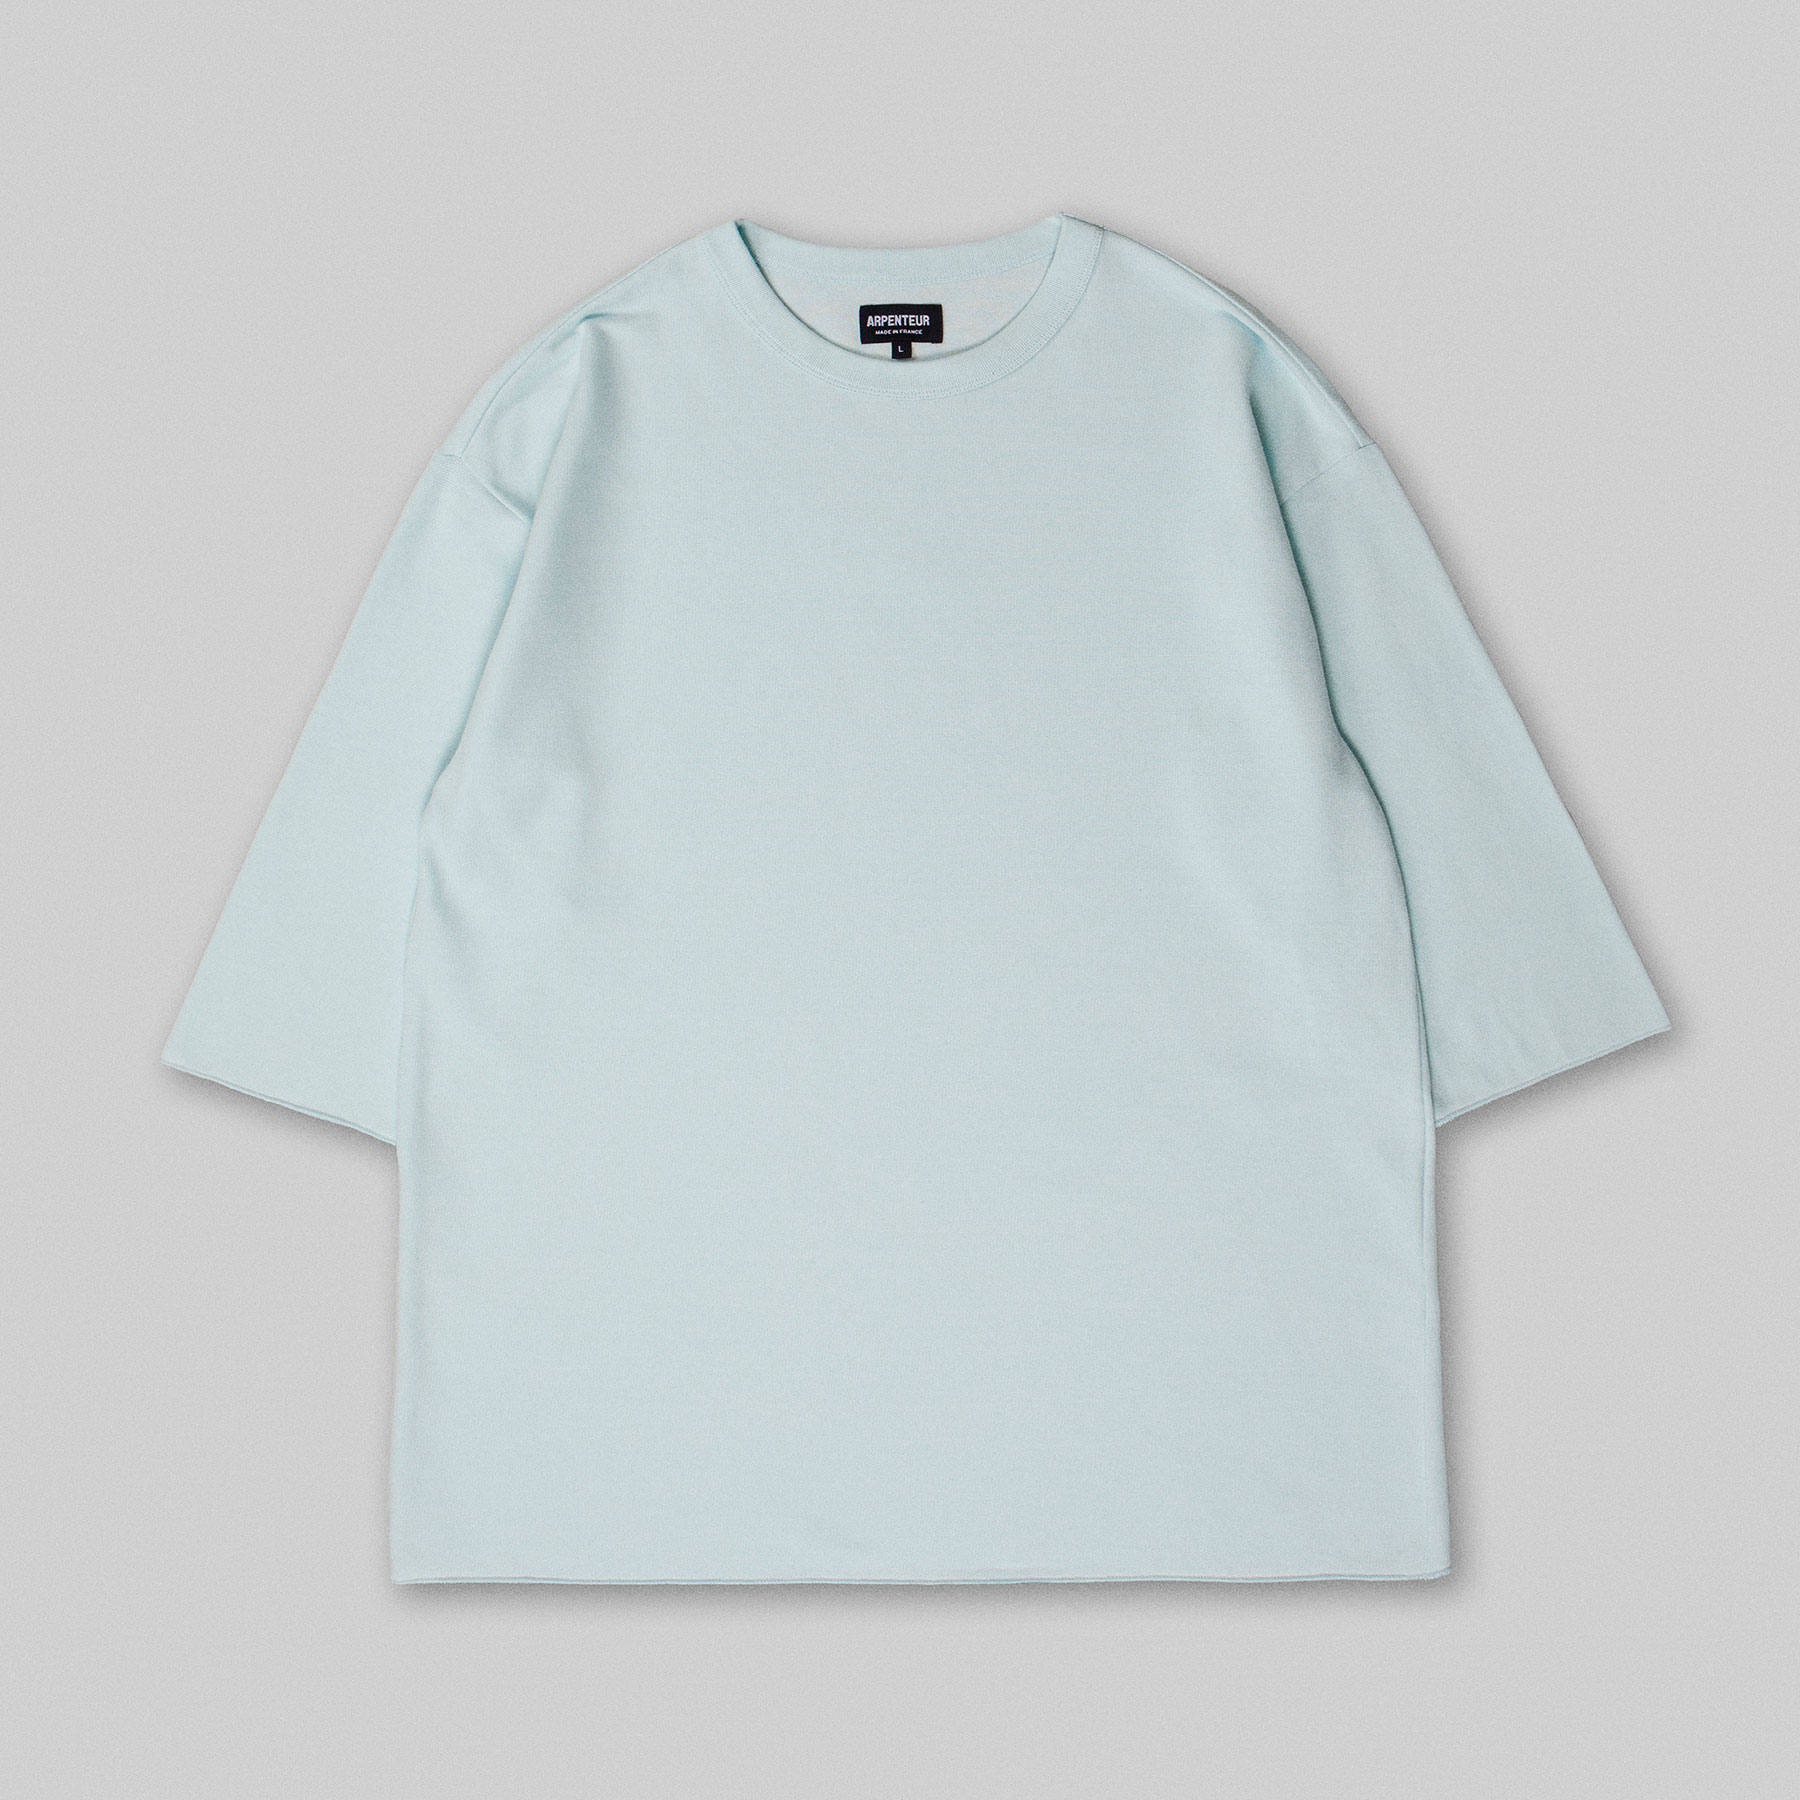 T-shirt MARINIERE par Arpenteur en coloris Nuage